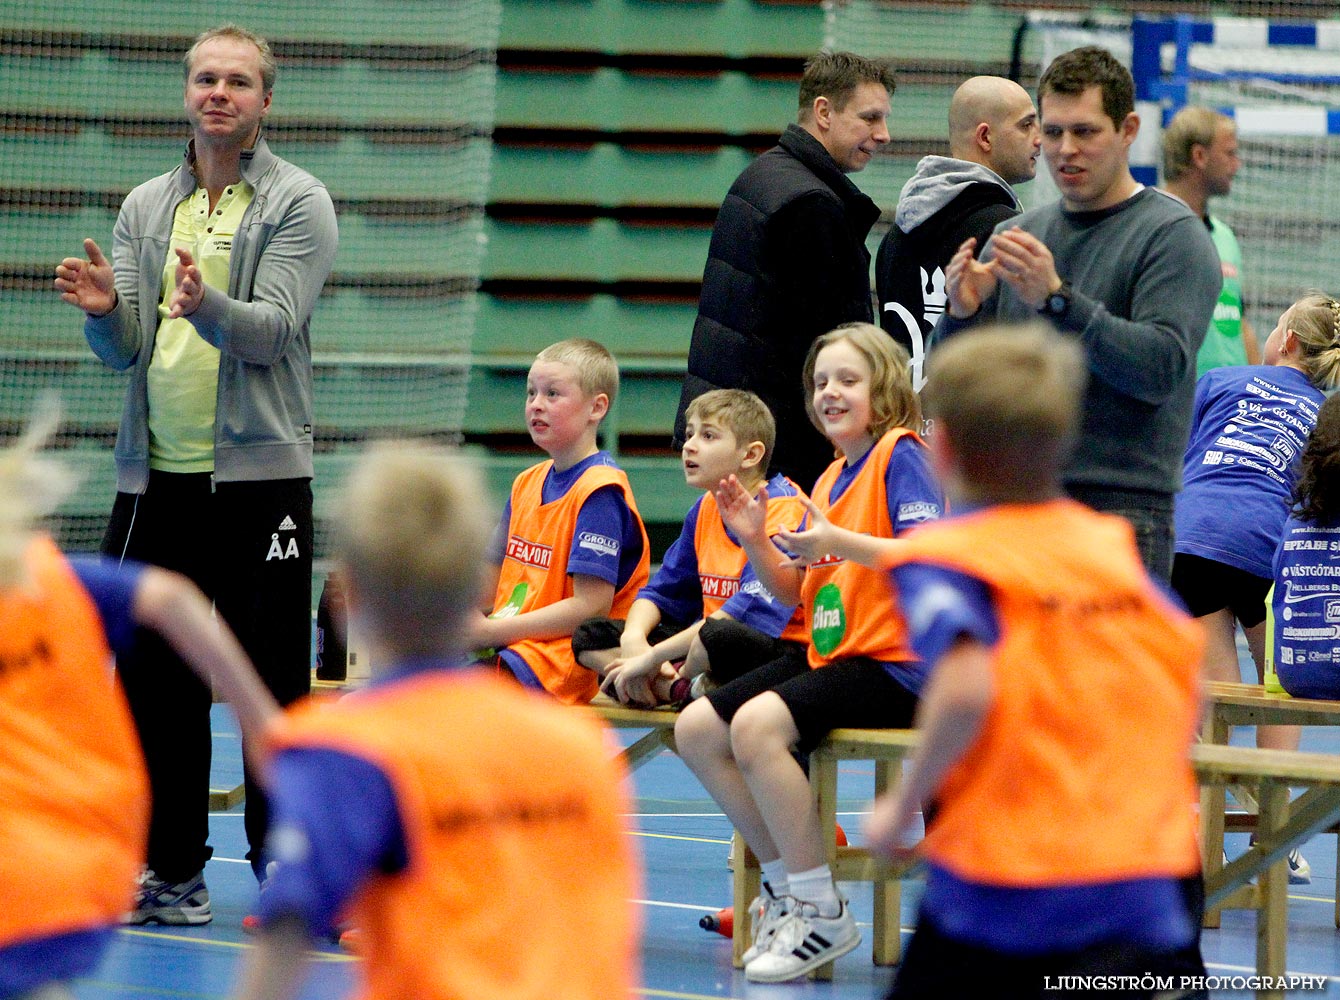 Klasshandboll Skövde 2012 Åldersklass 2001,mix,Arena Skövde,Skövde,Sverige,Handboll,,2012,47065